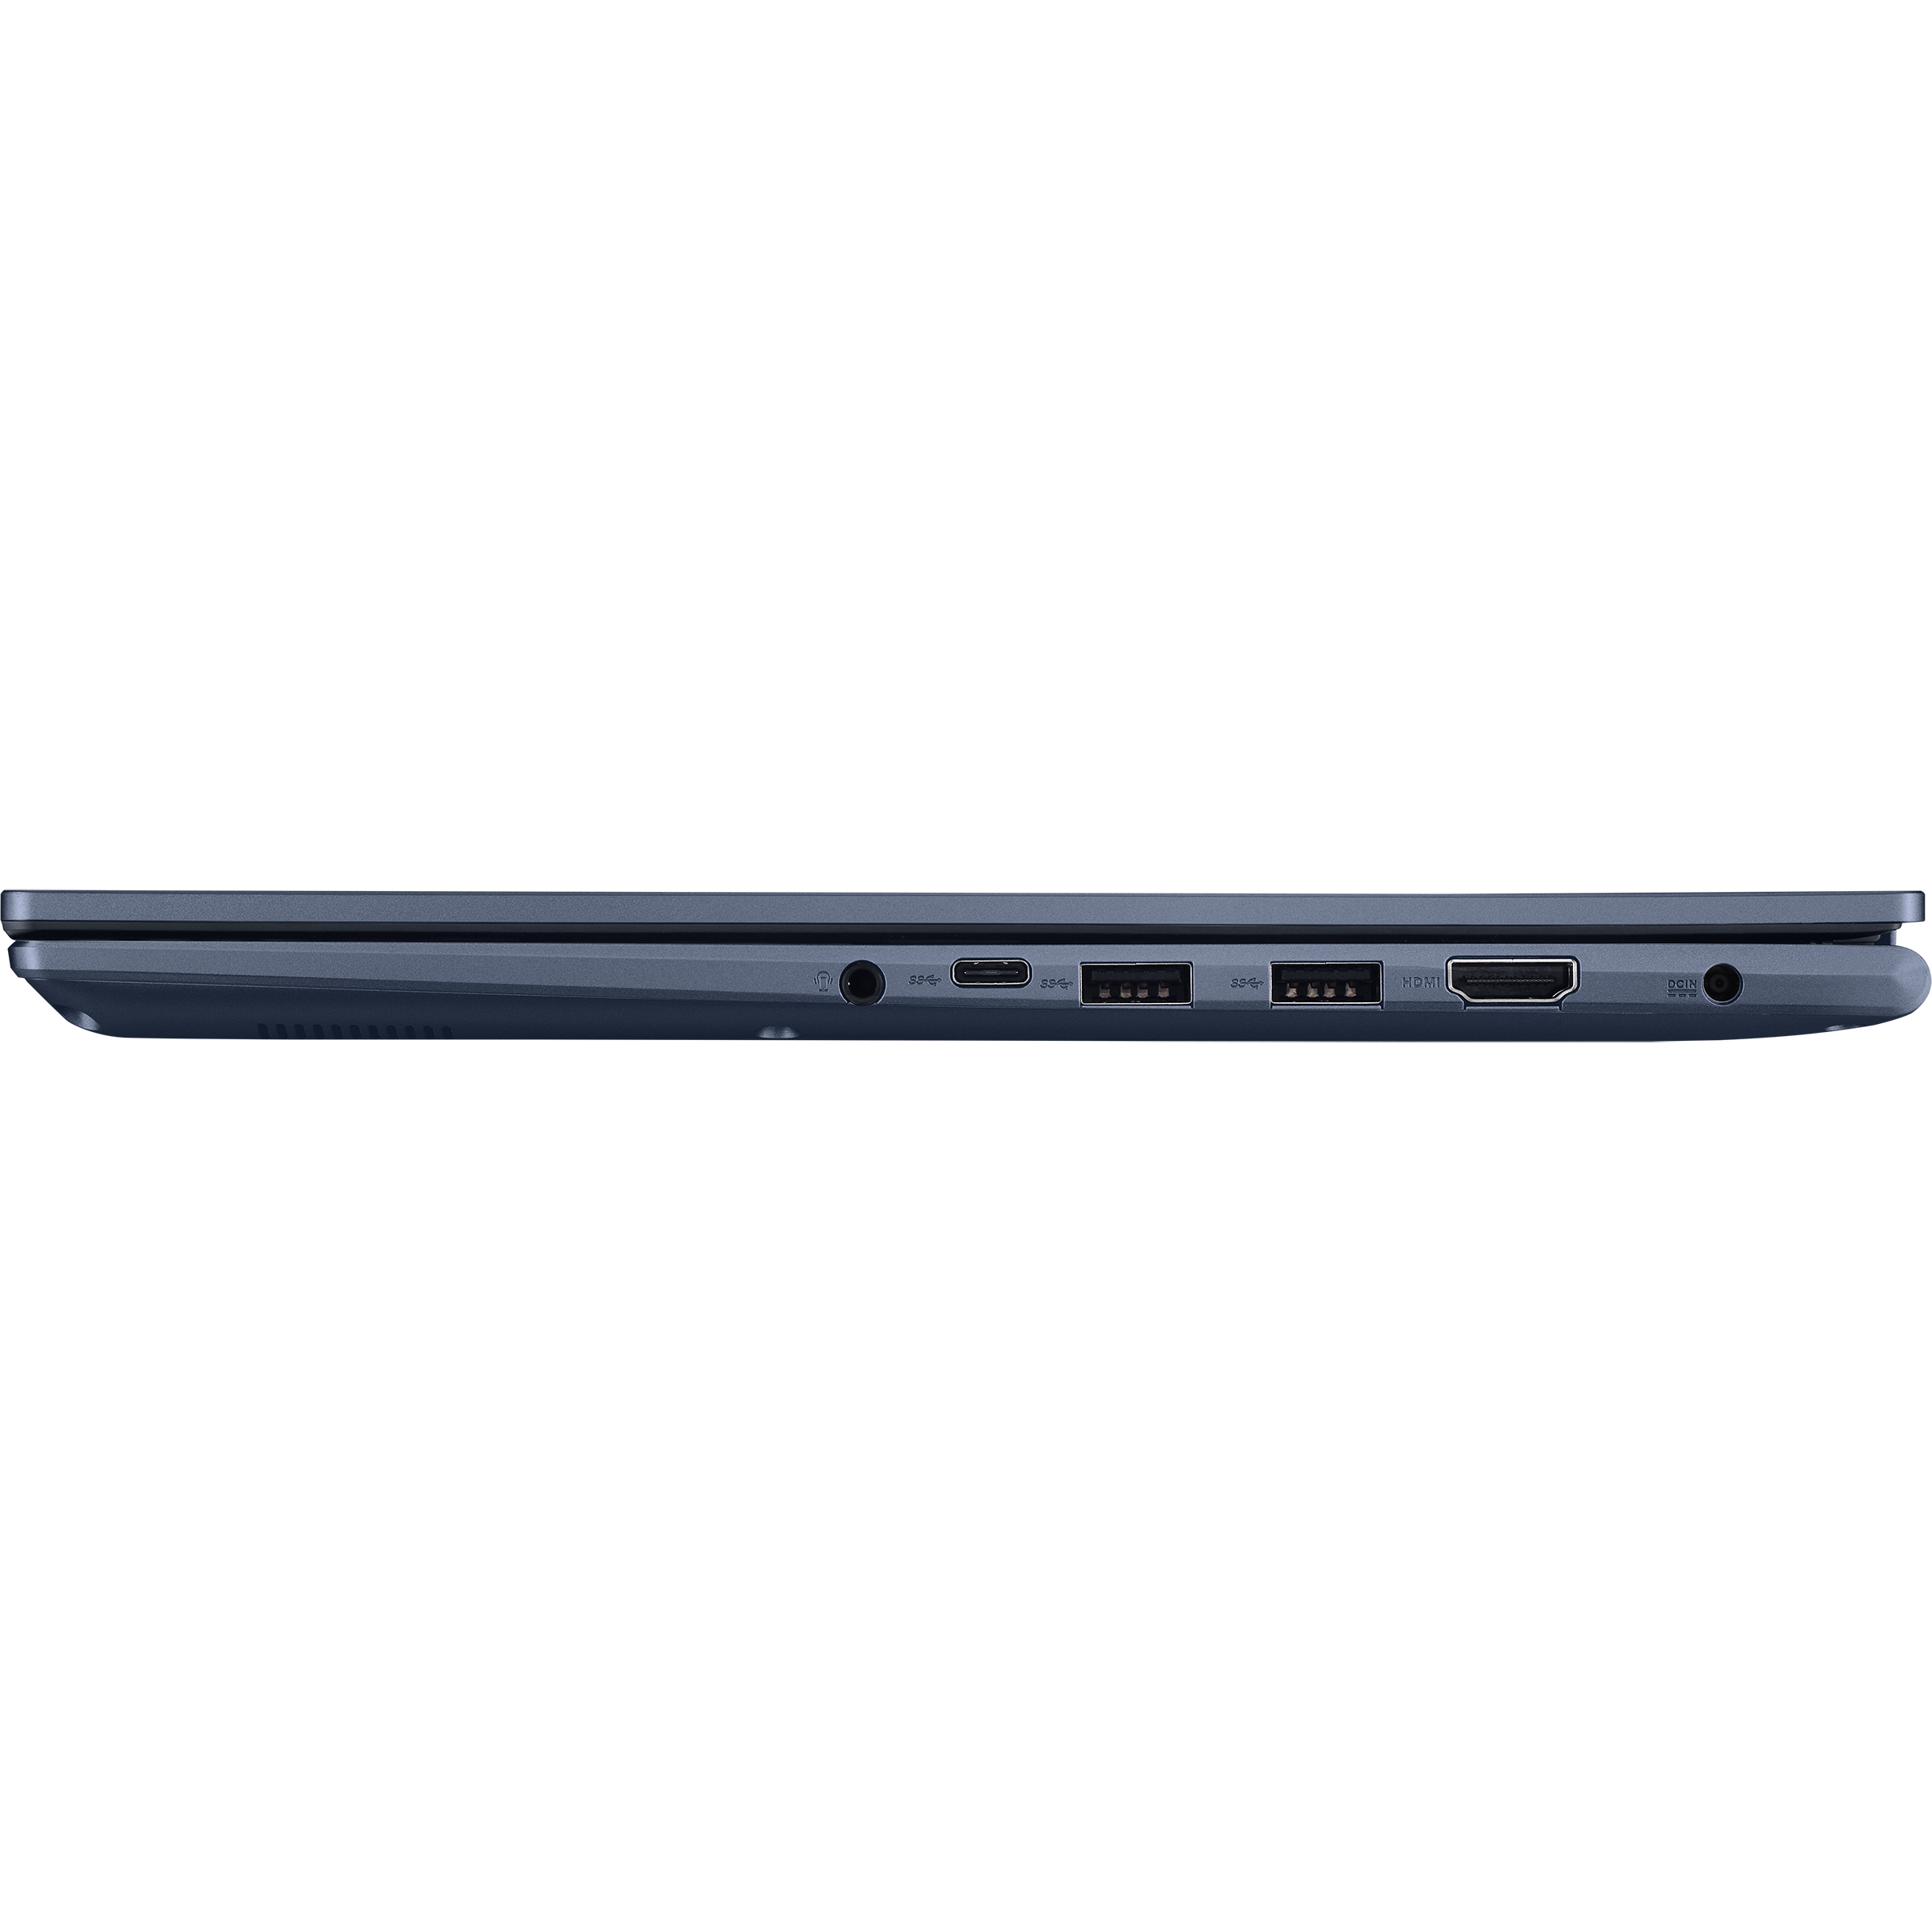 Vivobook 15X OLED (M1503, AMD Ryzen 5000 series)｜Laptops For Home